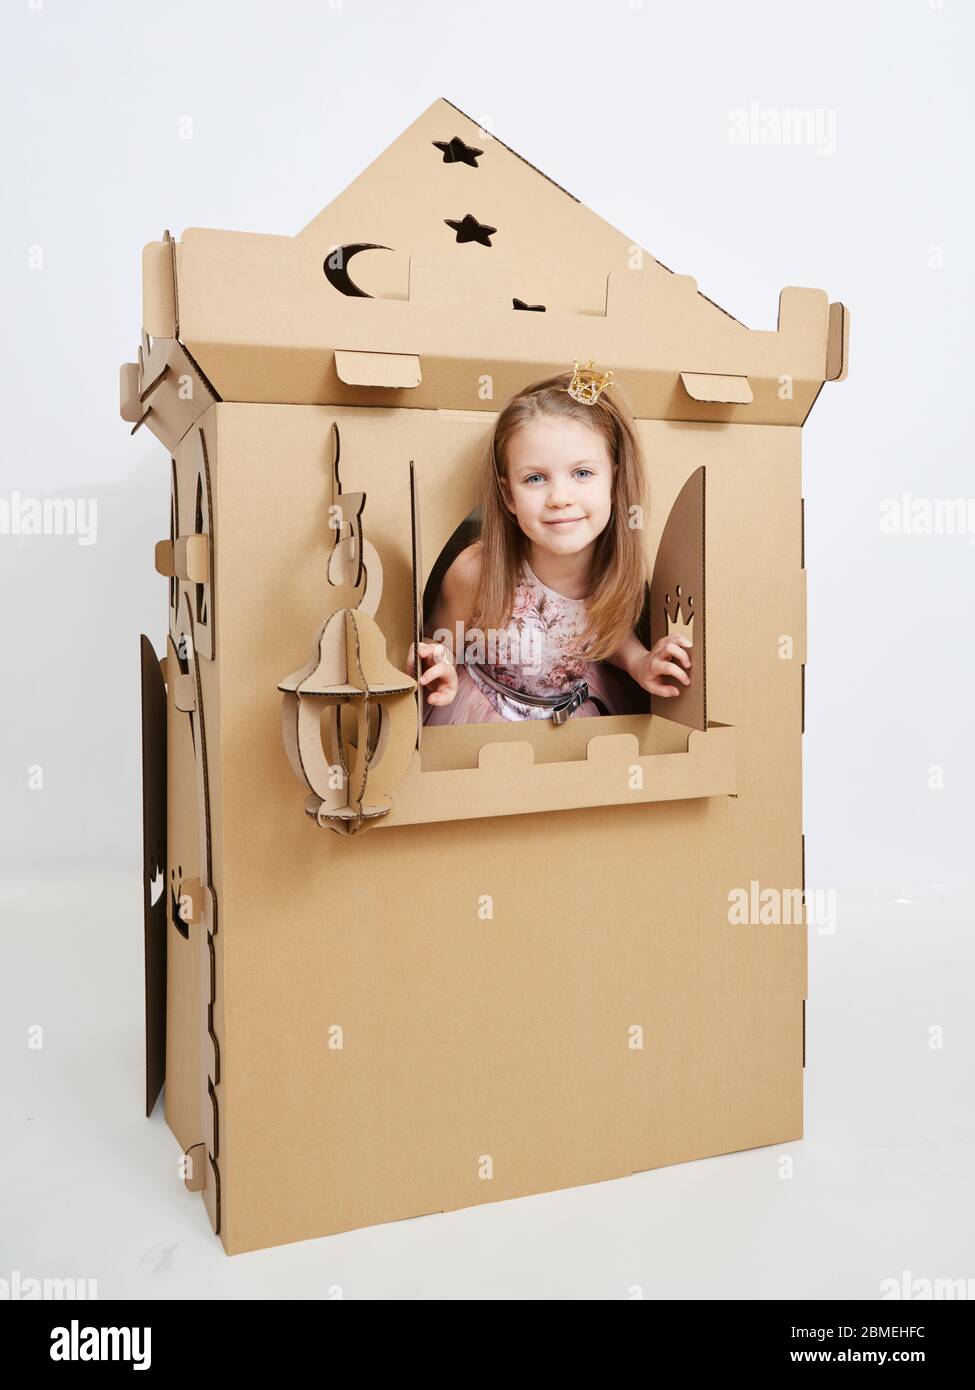 La princesse joue avec la tour de château en carton Photo Stock - Alamy